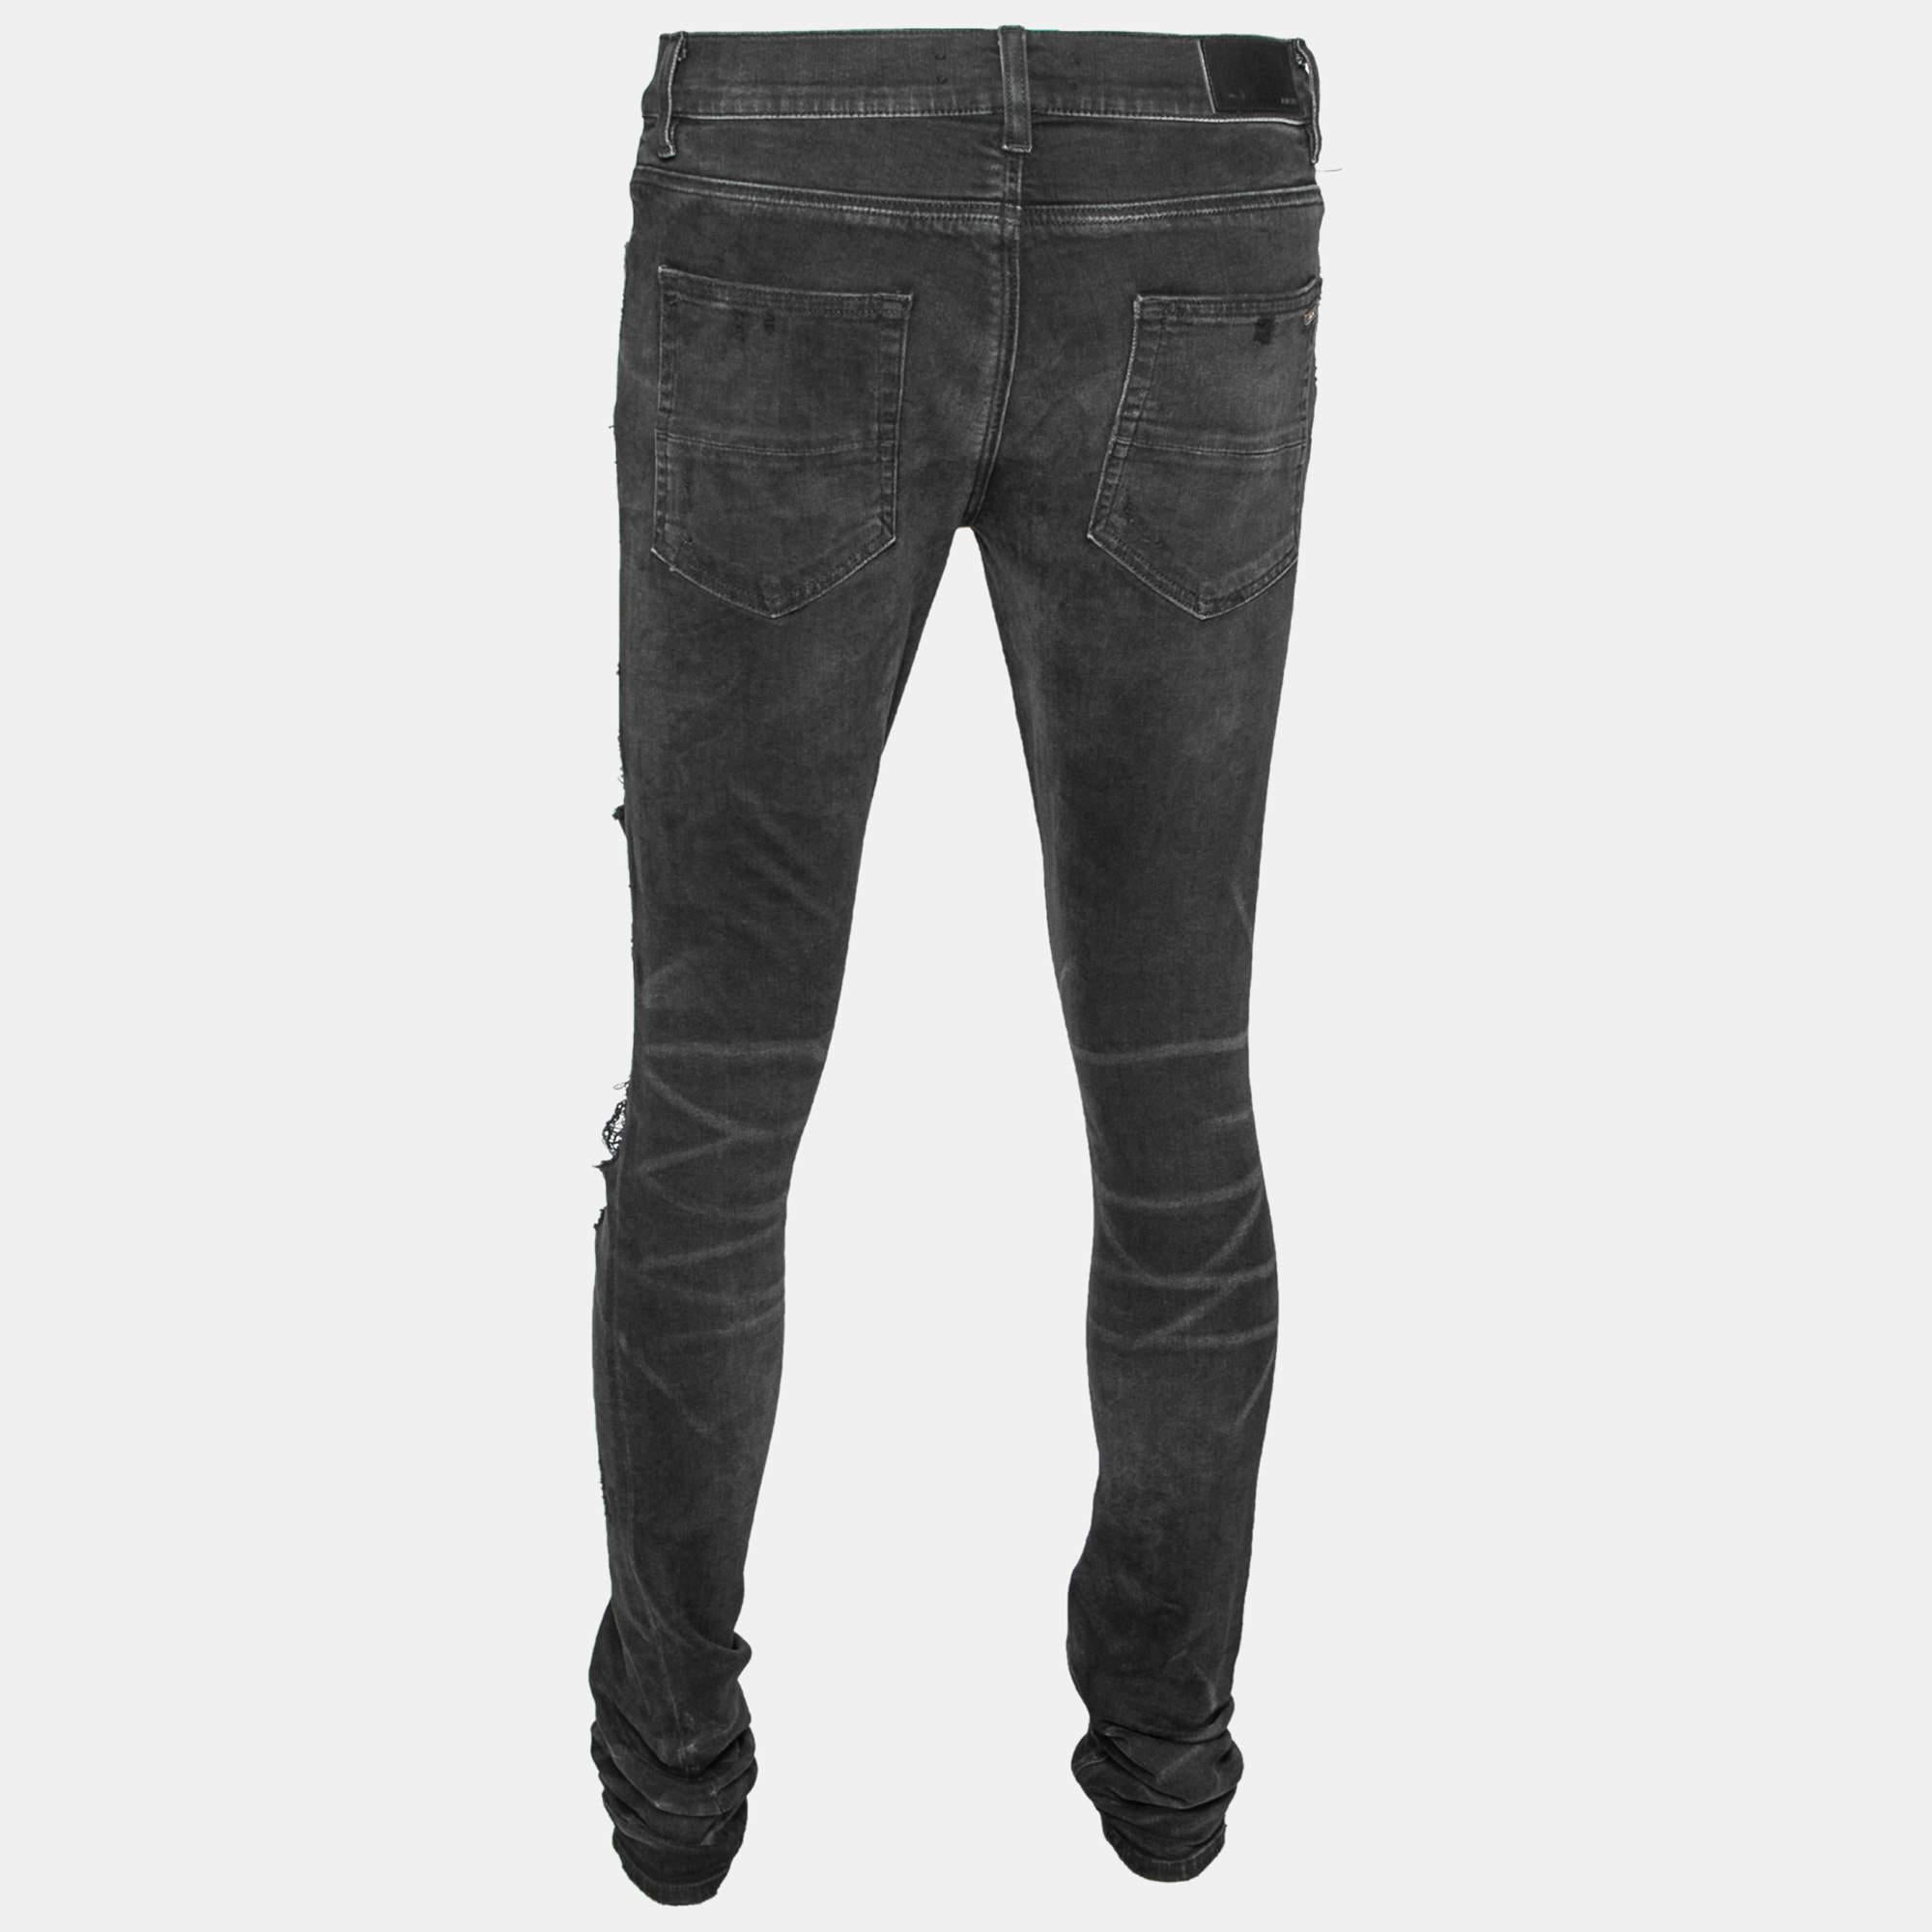 Remettez votre garde-robe au goût du jour avec ce jean d'Amiri ! Ils sont créés à partir d'un tissu en coton noir, enrichi de détails en relief. Le jean est conçu dans un style slim et est doté d'une fermeture boutonnée et de poches extérieures.

